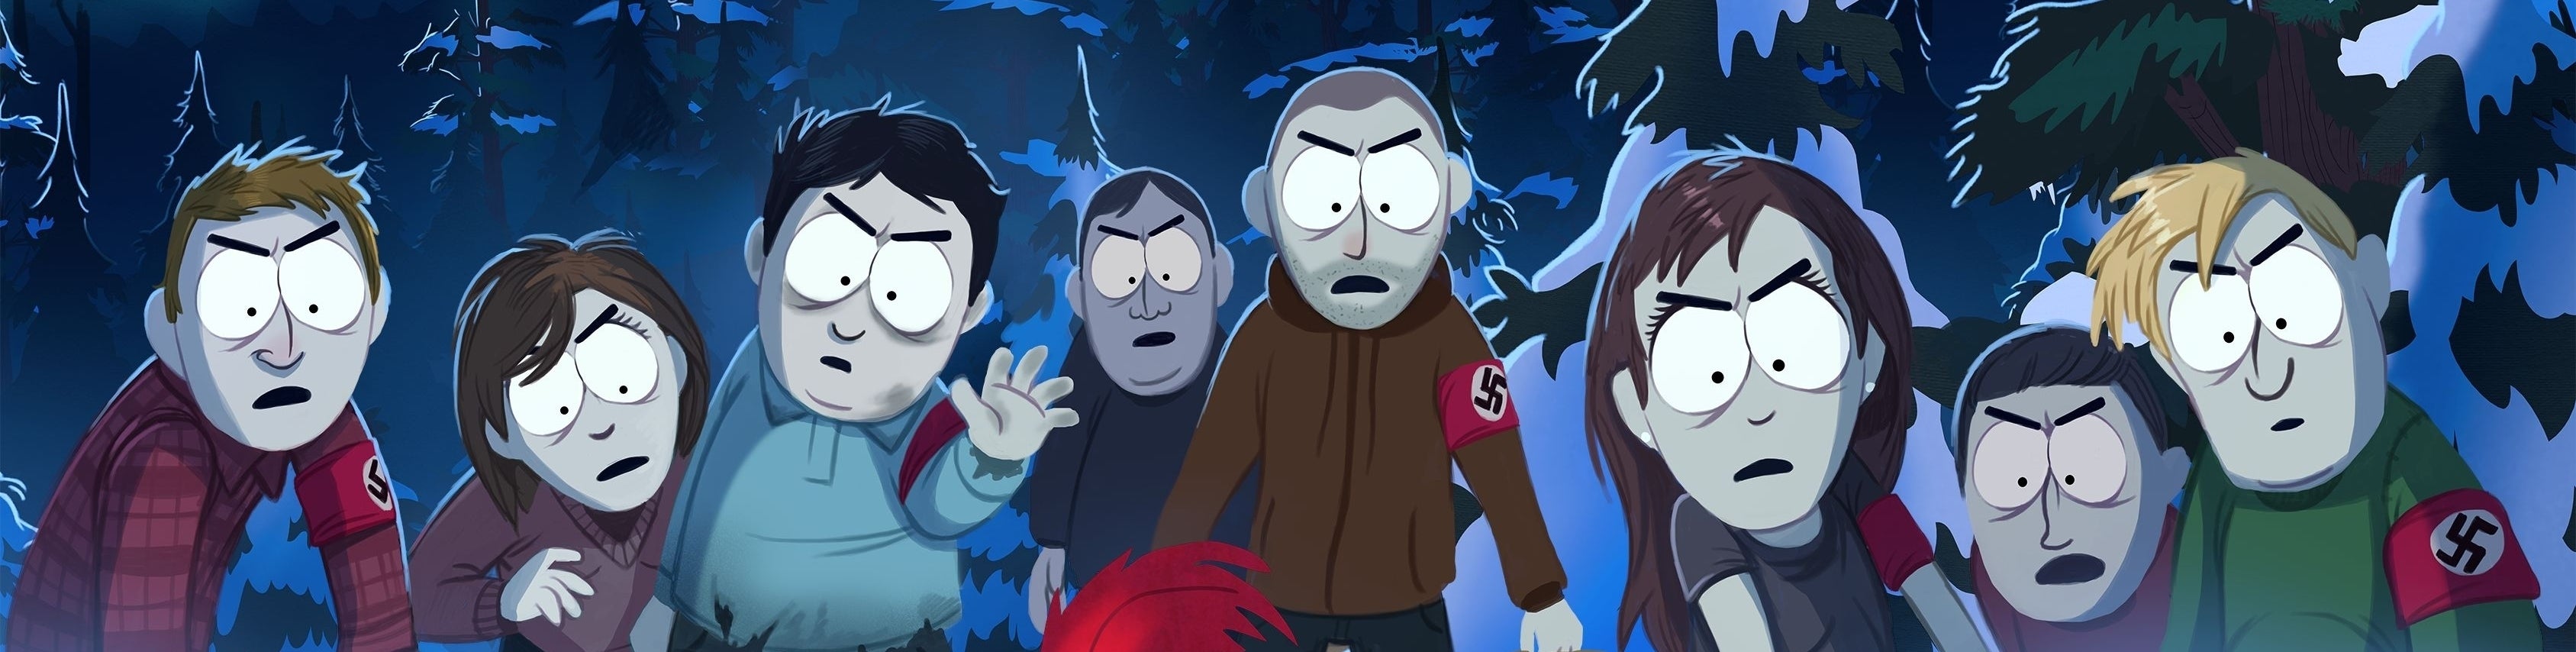 Imagen para Análisis de South Park: La Vara de la Verdad